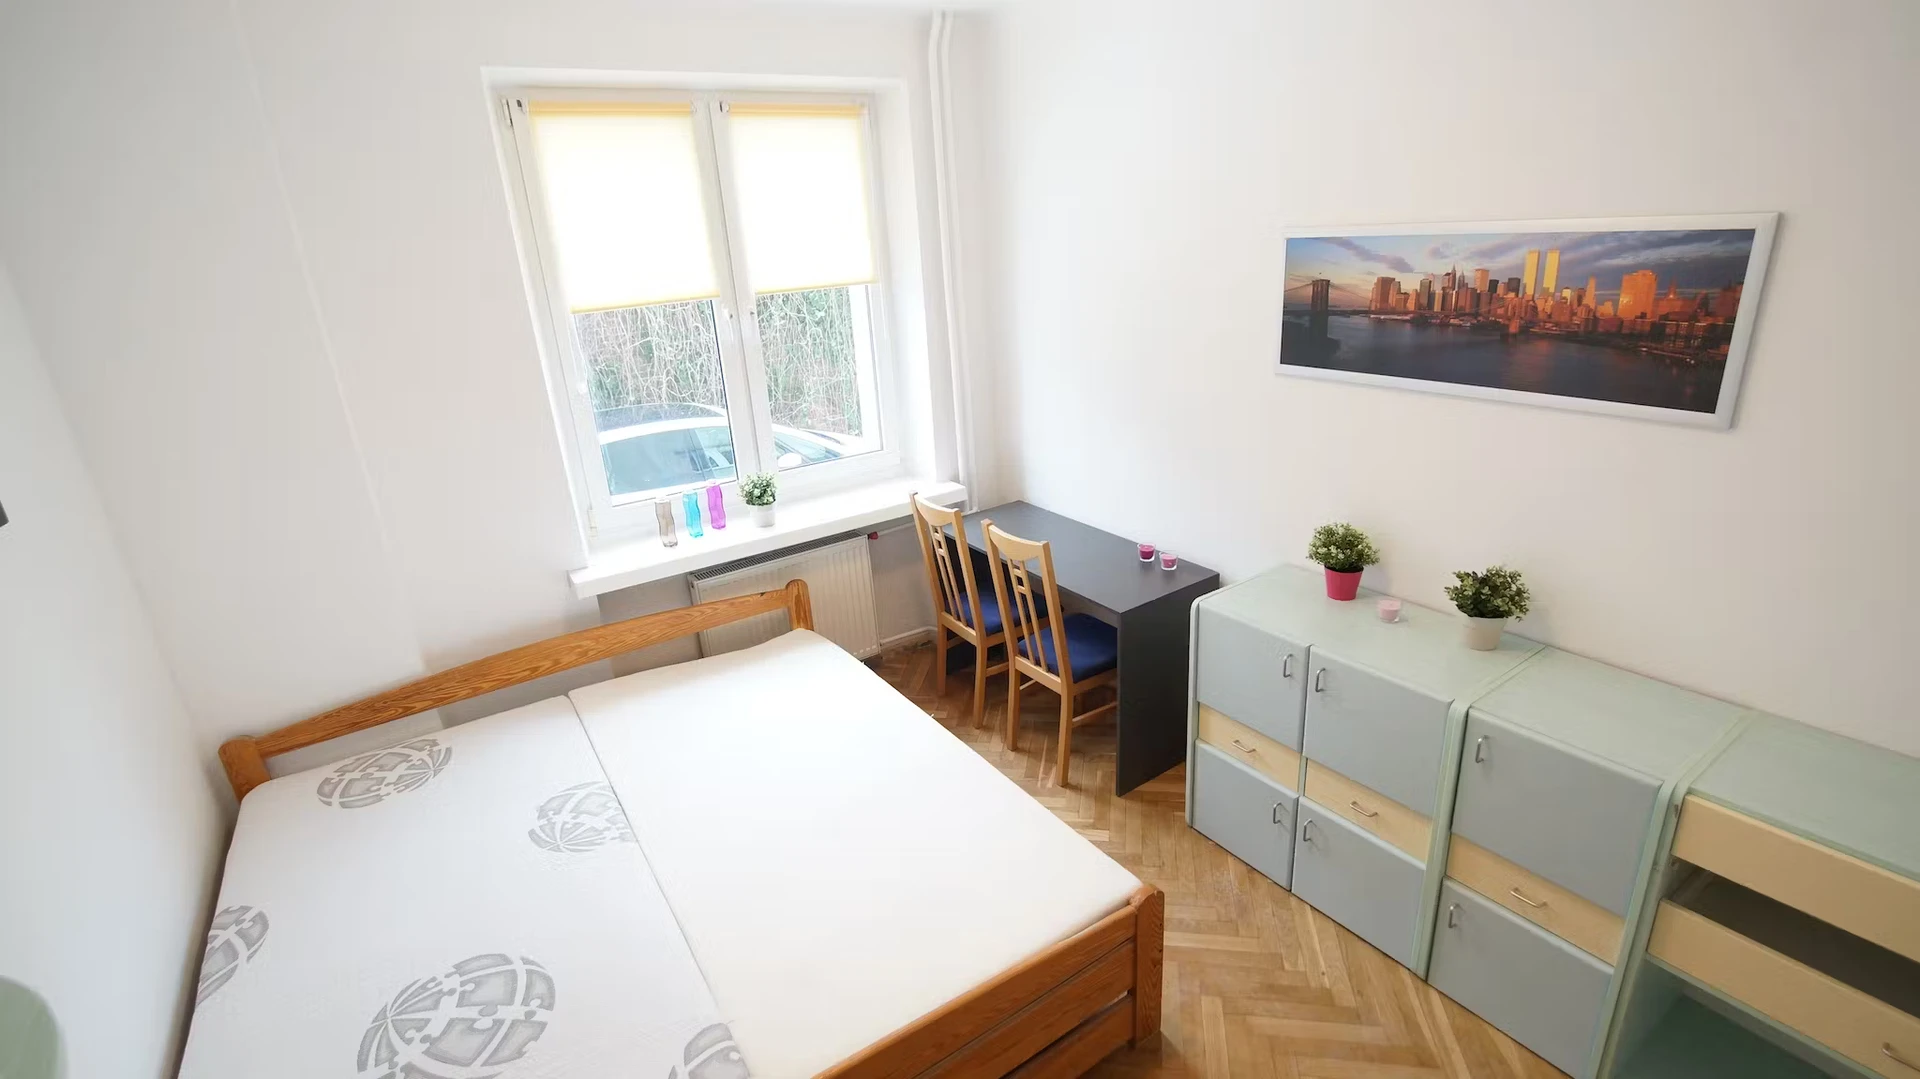 Monatliche Vermietung von Zimmern in Lodz